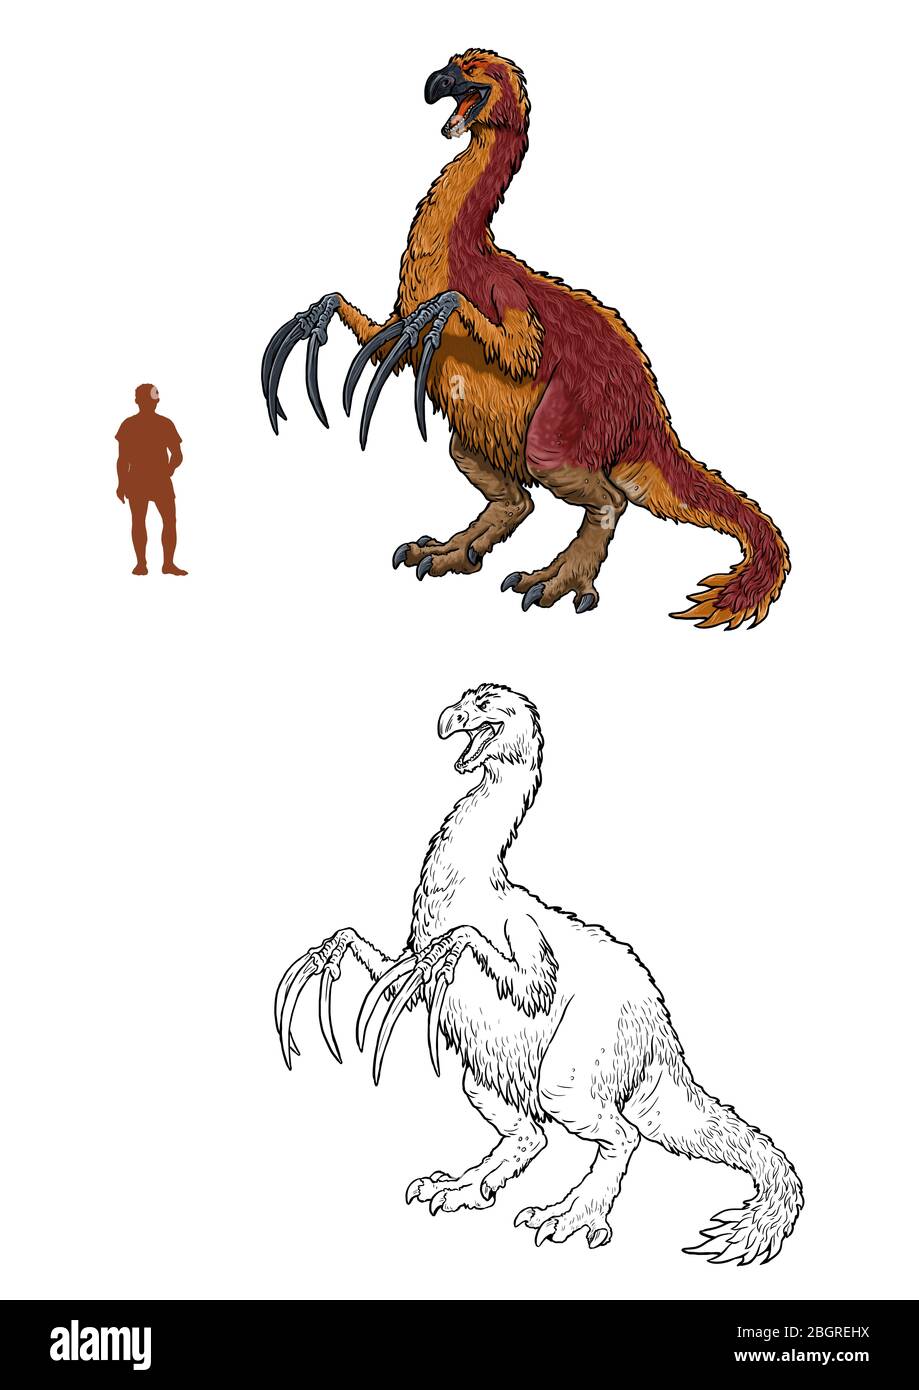 Pflanzenfressender Dinosaurier - Therizinosaurus. Vergleich zwischen Dinosaurier und Mensch. Dino Malvorlagen. Stockfoto